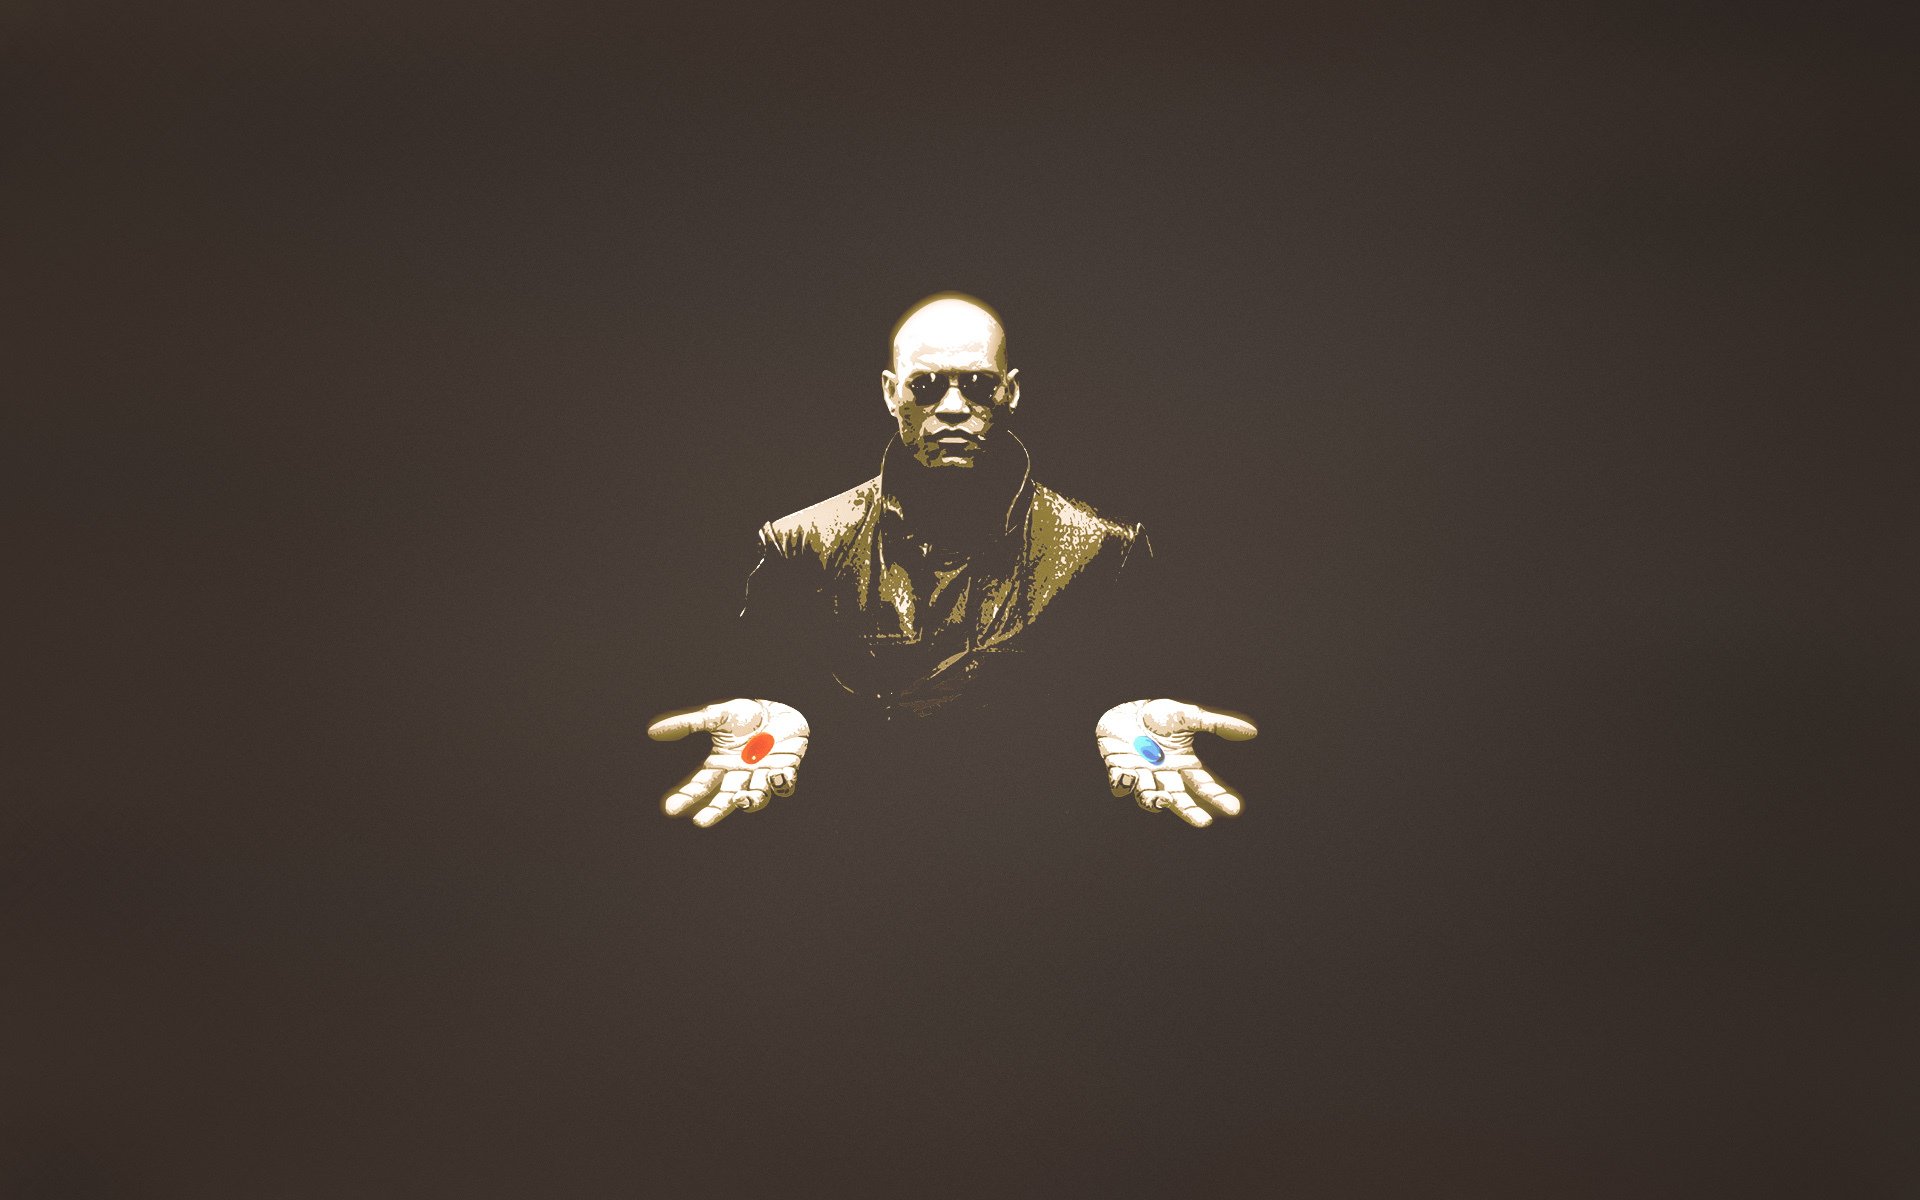 матрица морфеус очки темноватый фон таблетки красная синия руки человек минимализм лоуренс фишборн